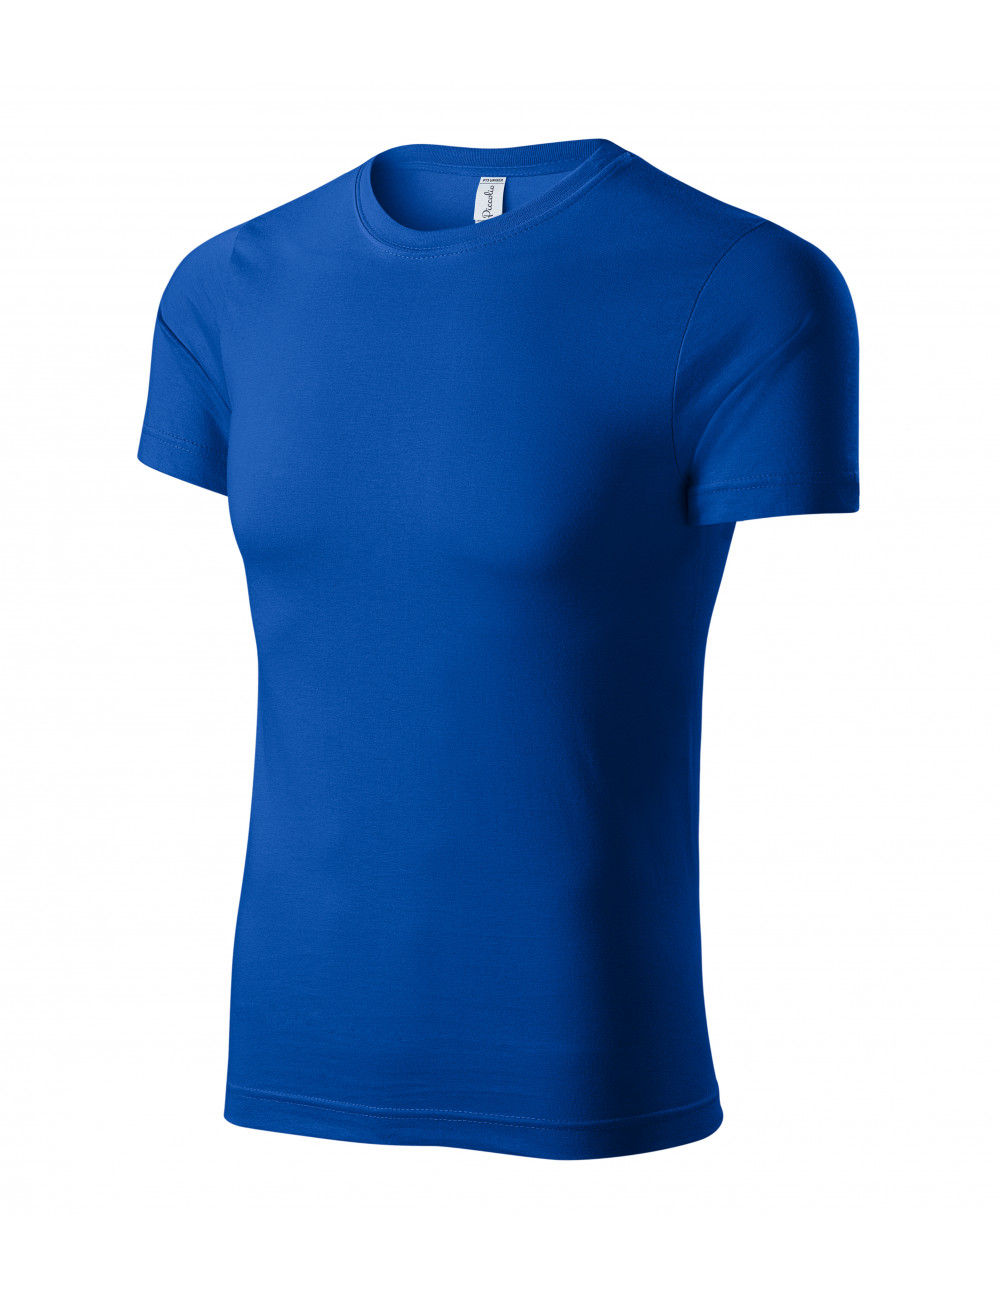 Unisex t-shirt paint p73 cornflower blue Adler Piccolio